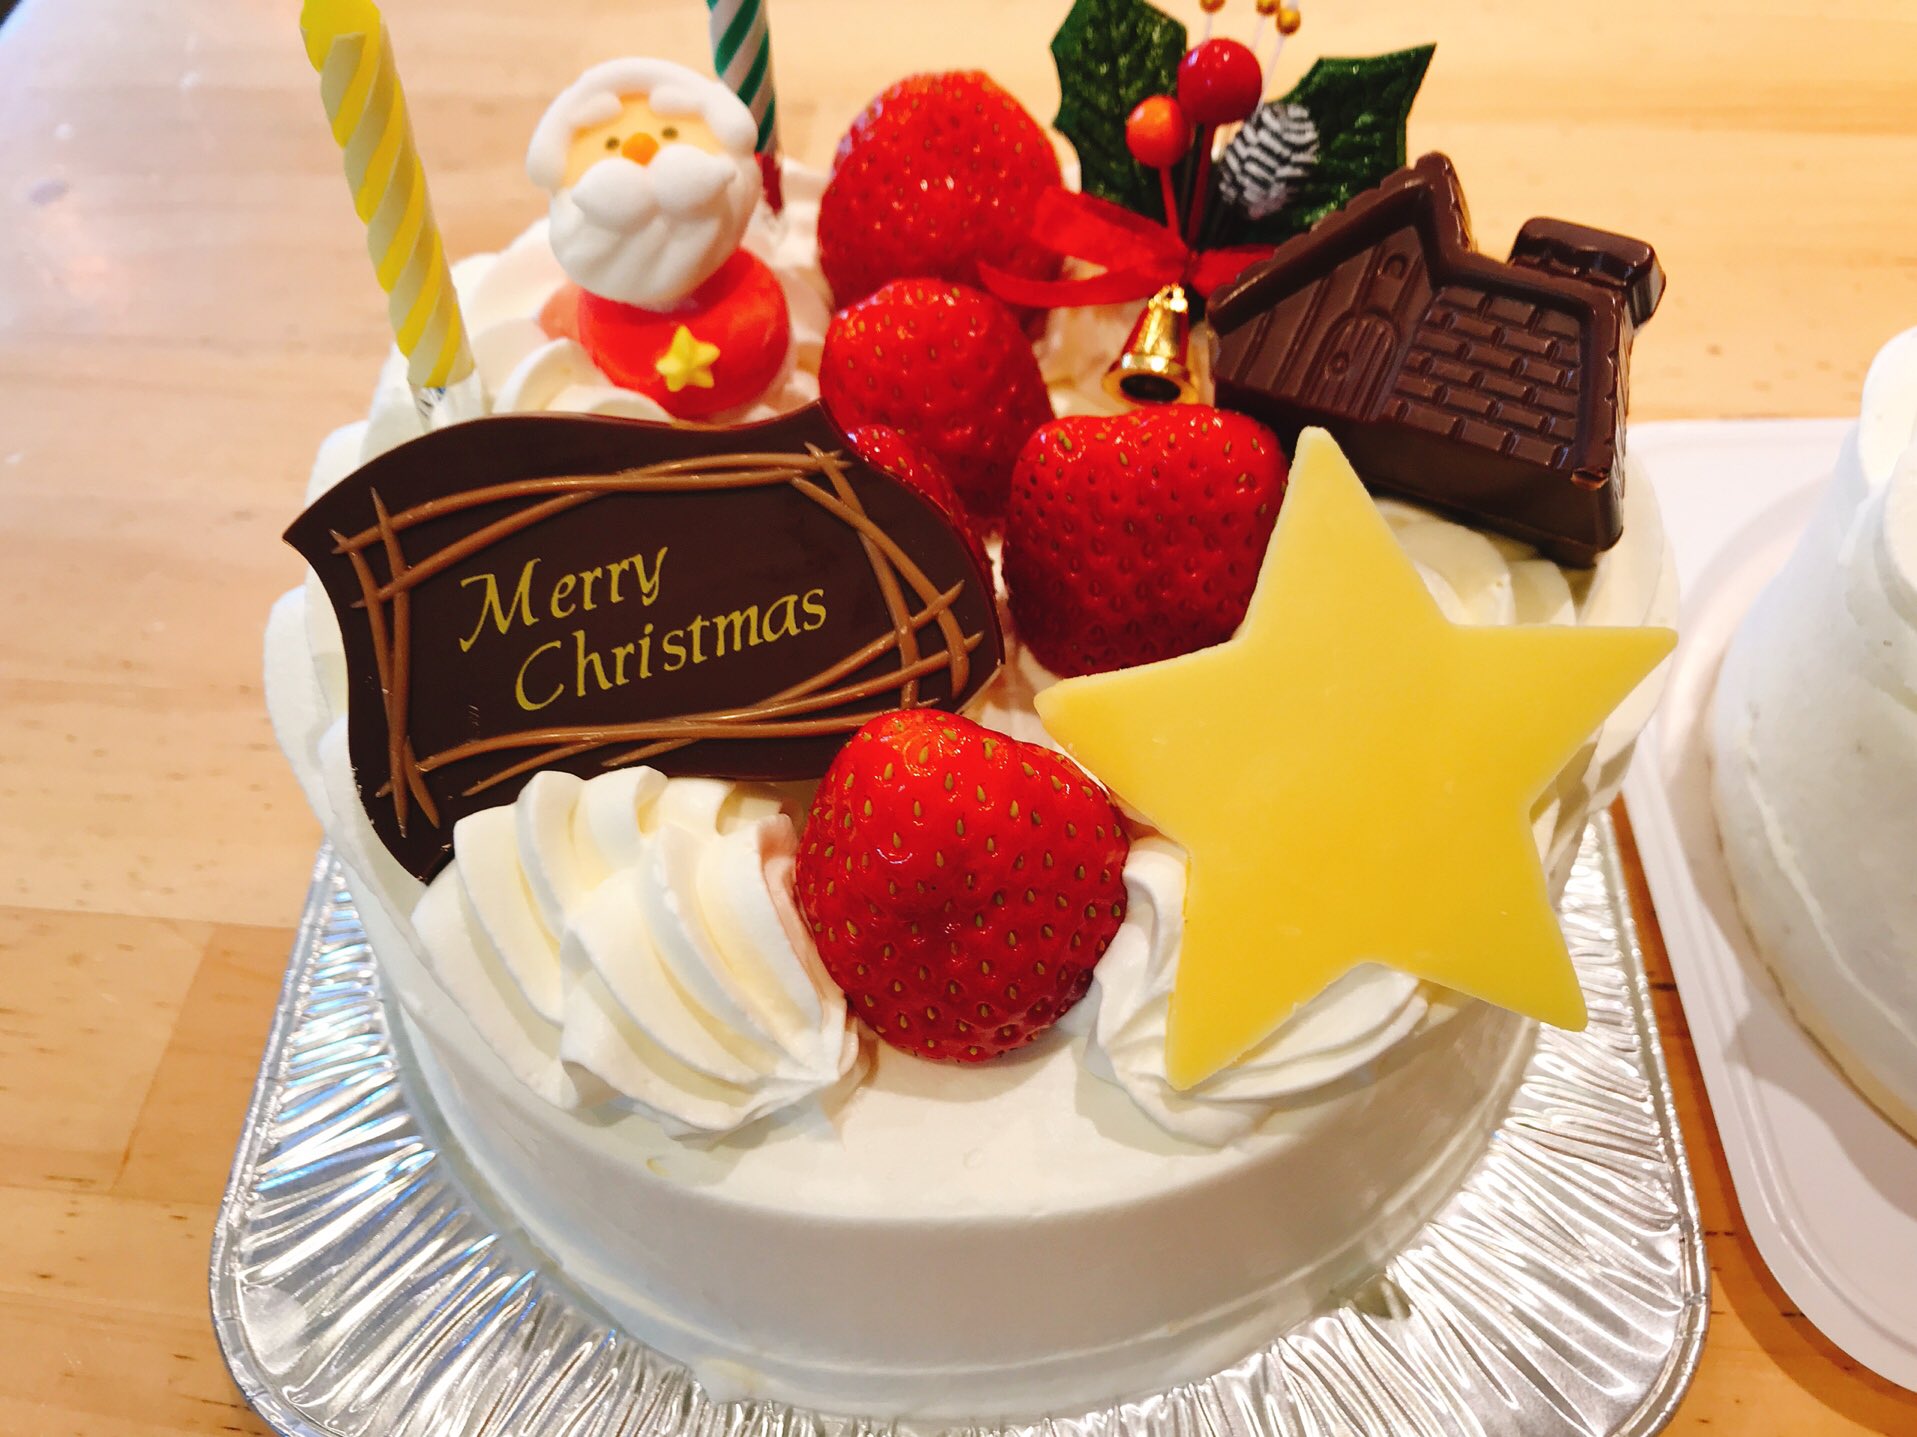 تويتر 伊勢崎のケーキ屋 على تويتر いよいよ クリスマスですね 今年最初の 生クリームクリスマスケーキの ご注文です ありがとうございます 群馬県 高崎 前橋 伊勢崎 カフェ スィーツ 美味しいケーキ屋 コーヒー ケーキ屋 ショコラ